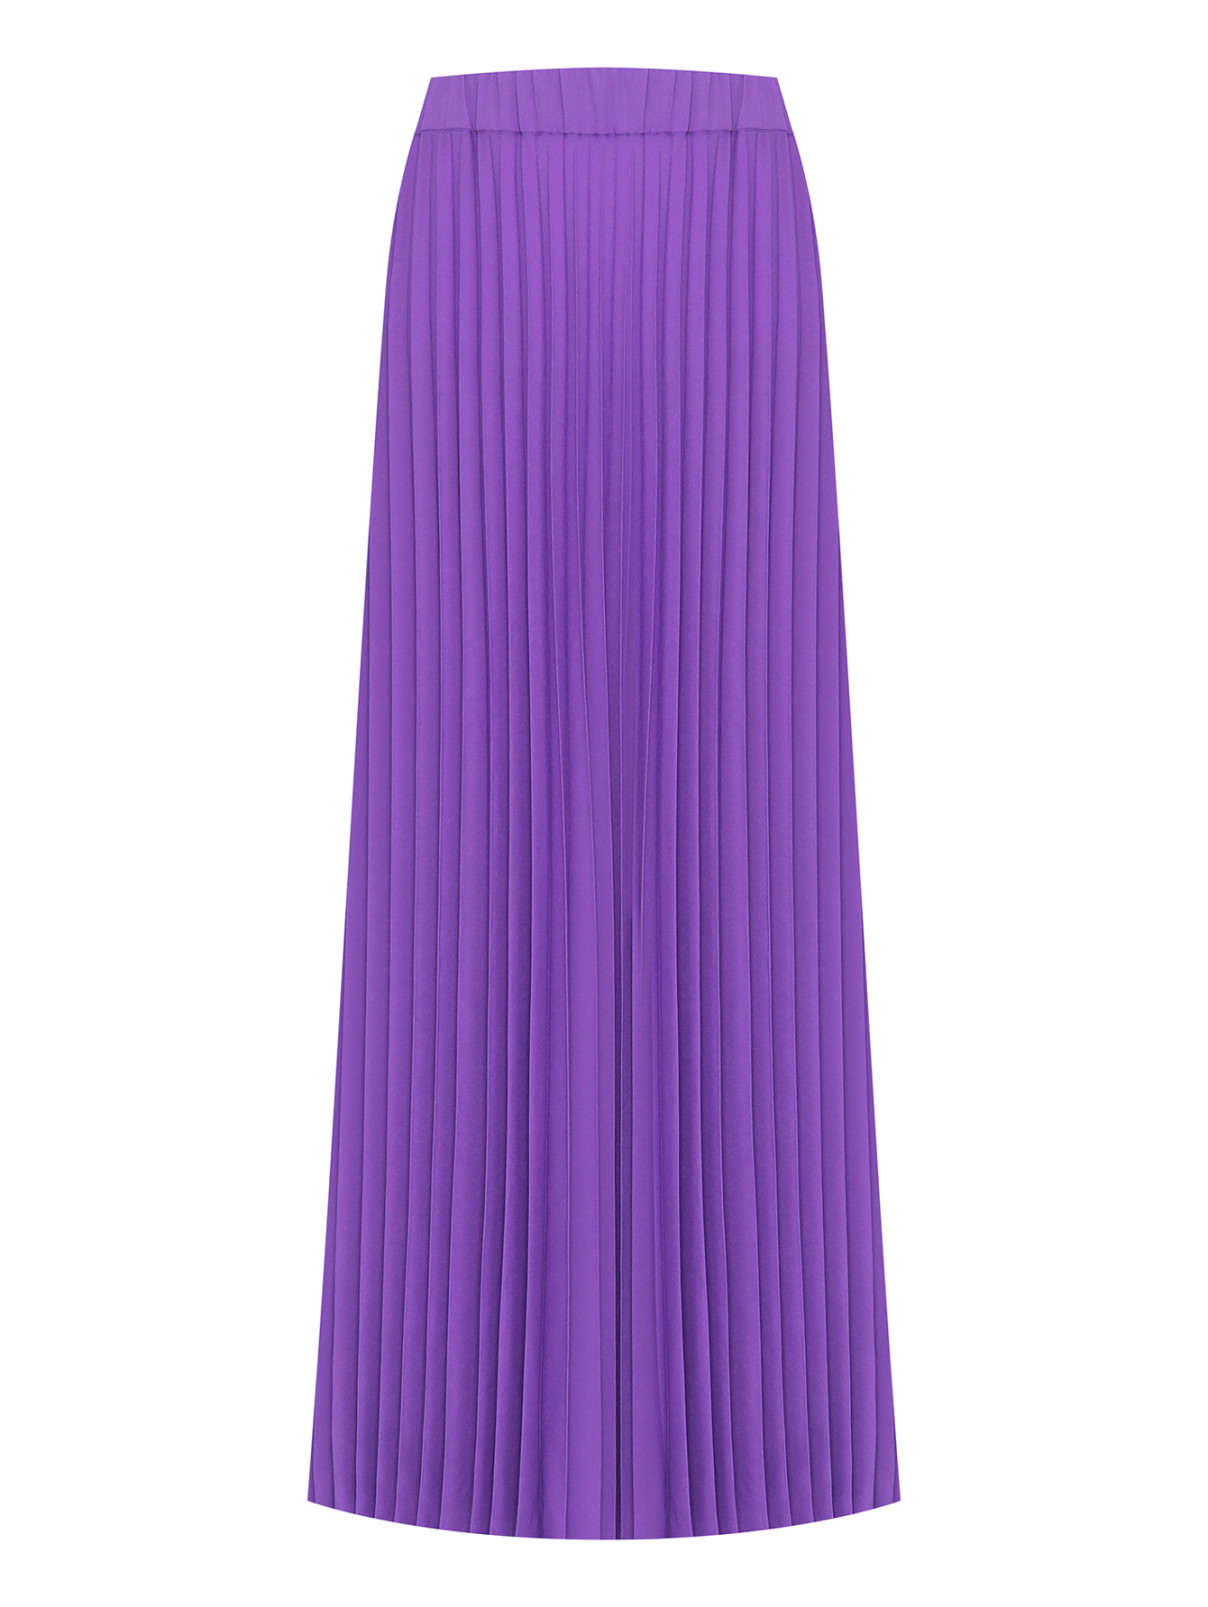 Юбка плиссерованная на резинке P.A.R.O.S.H.  –  Общий вид  – Цвет:  Фиолетовый